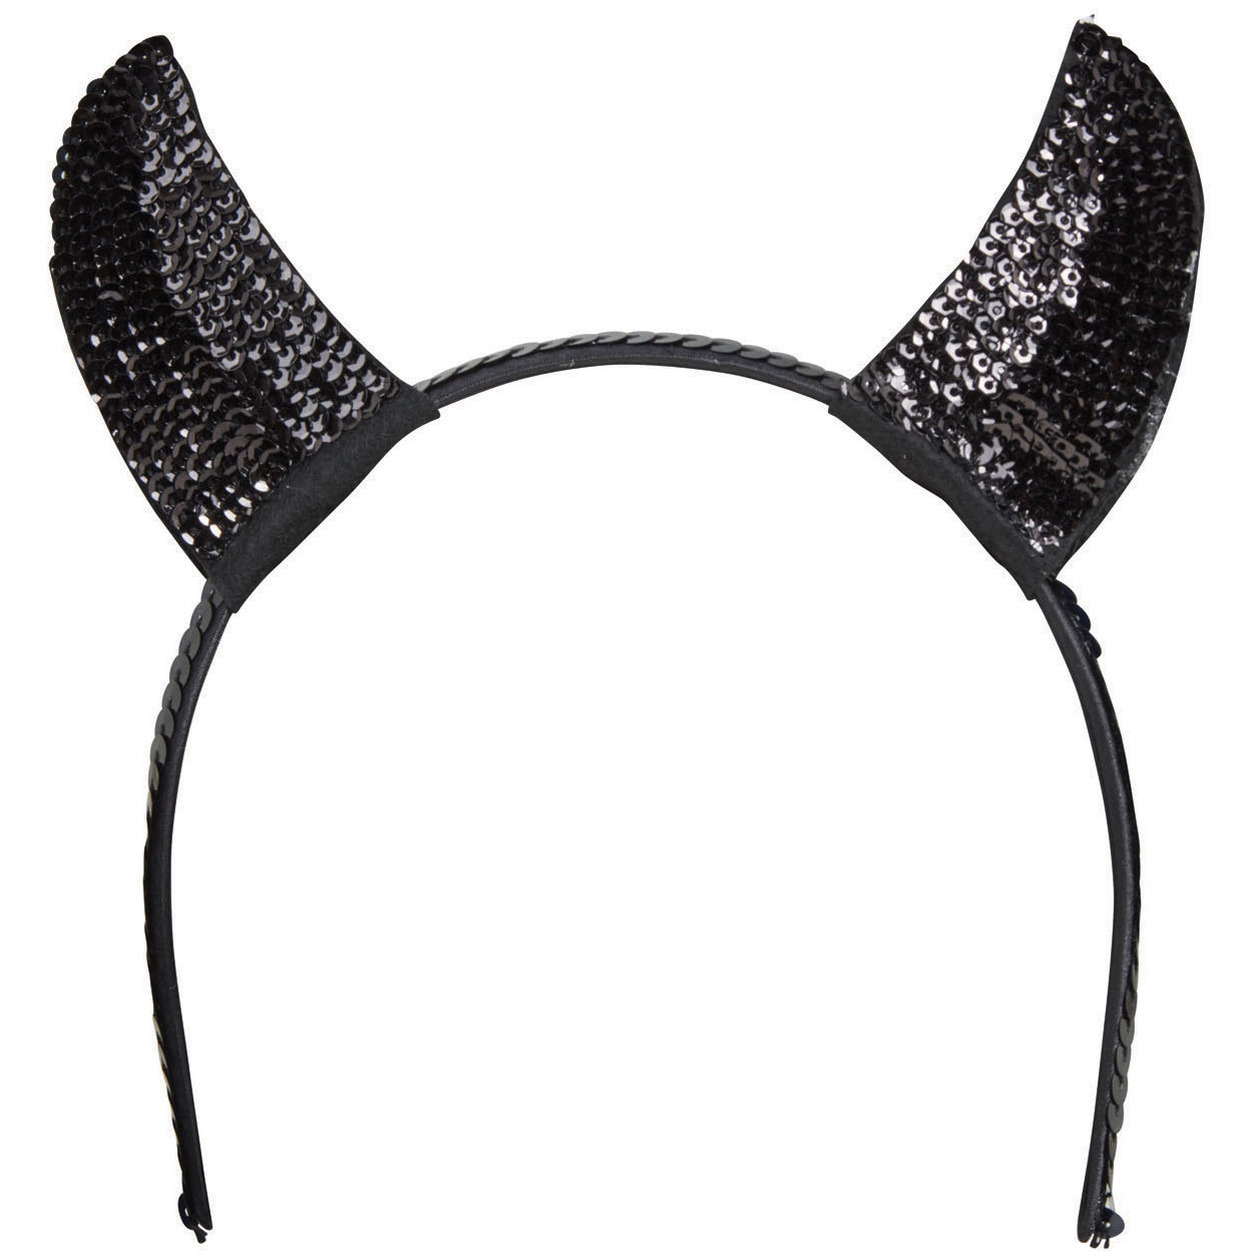 Halloween diadeem duivel hoorntjes met pailletten zwart kunststof